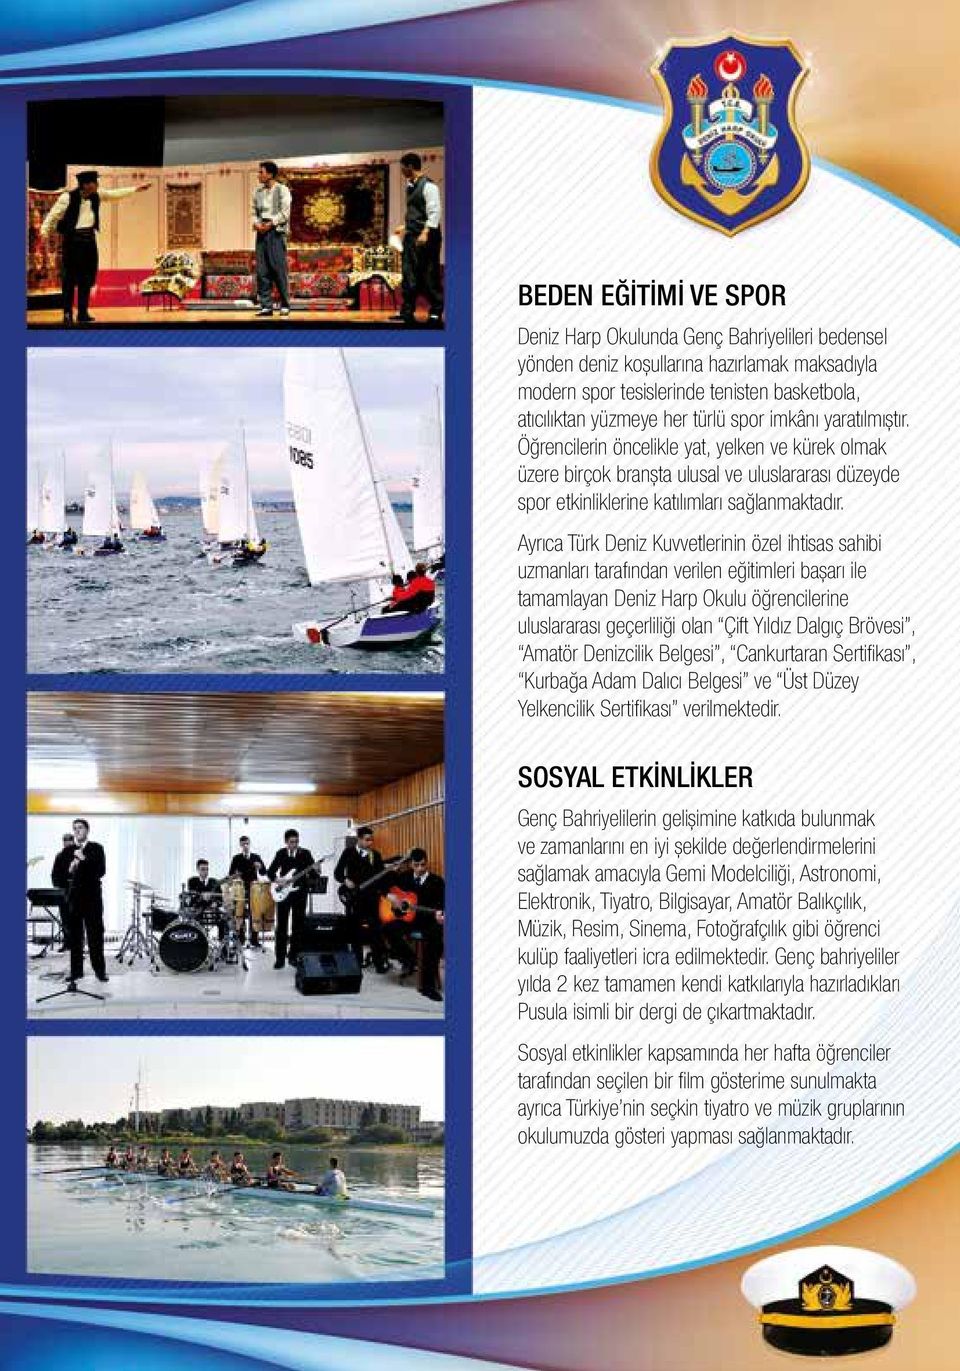 Ayrıca Türk Deniz Kuvvetlerinin özel ihtisas sahibi uzmanları tarafından verilen eğitimleri başarı ile tamamlayan Deniz Harp Okulu öğrencilerine uluslararası geçerliliği olan Çift Yıldız Dalgıç